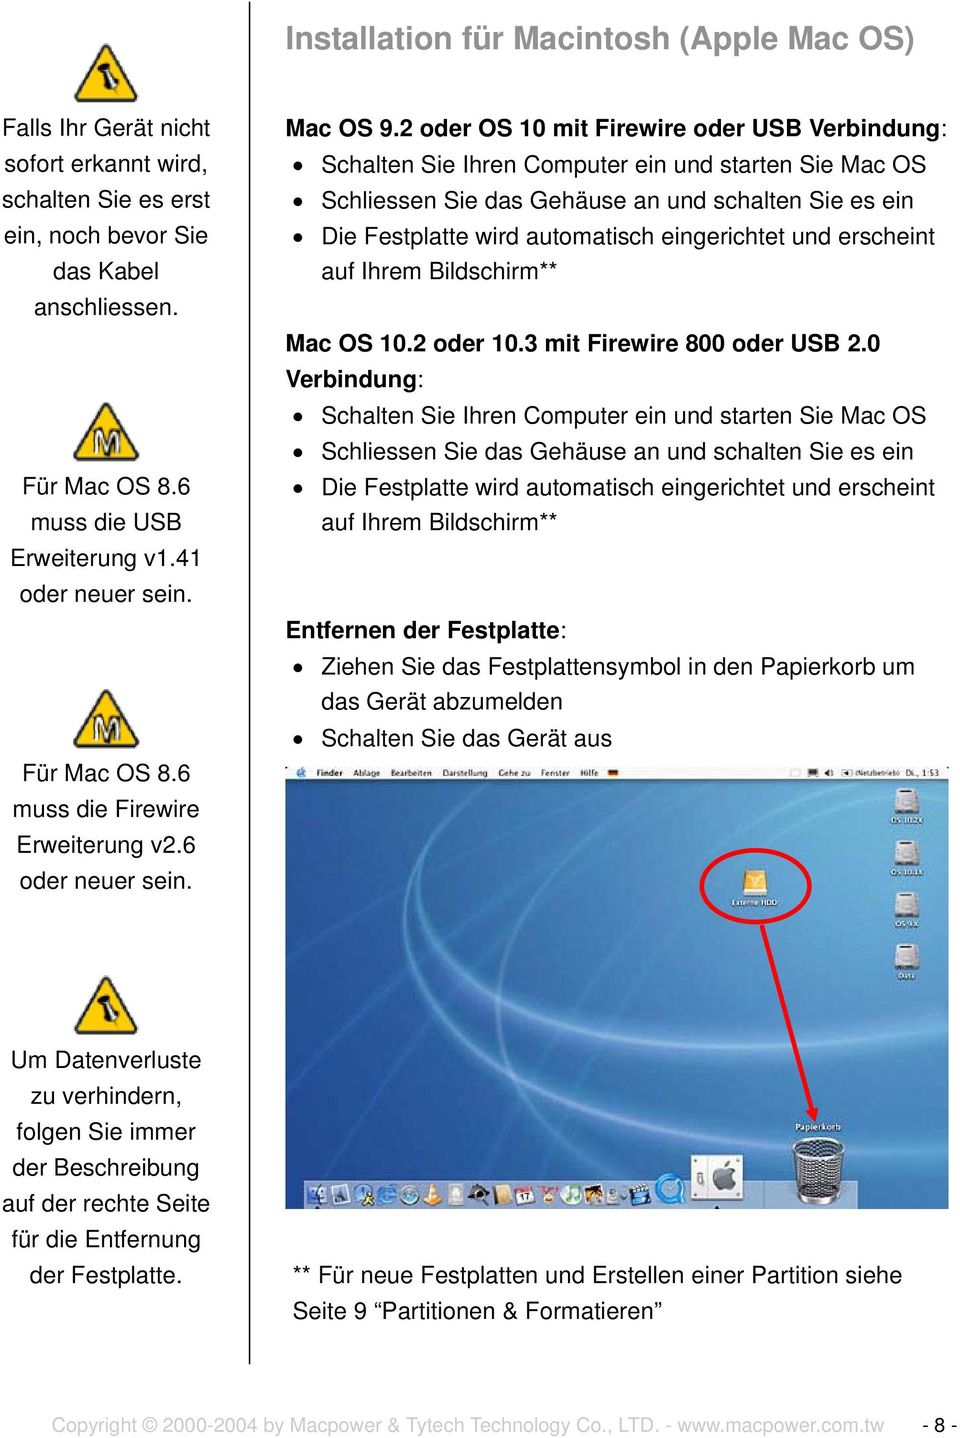 2 oder OS 10 mit Firewire oder USB Verbindung: Schalten Sie Ihren Computer ein und starten Sie Mac OS Schliessen Sie das Gehäuse an und schalten Sie es ein Die Festplatte wird automatisch